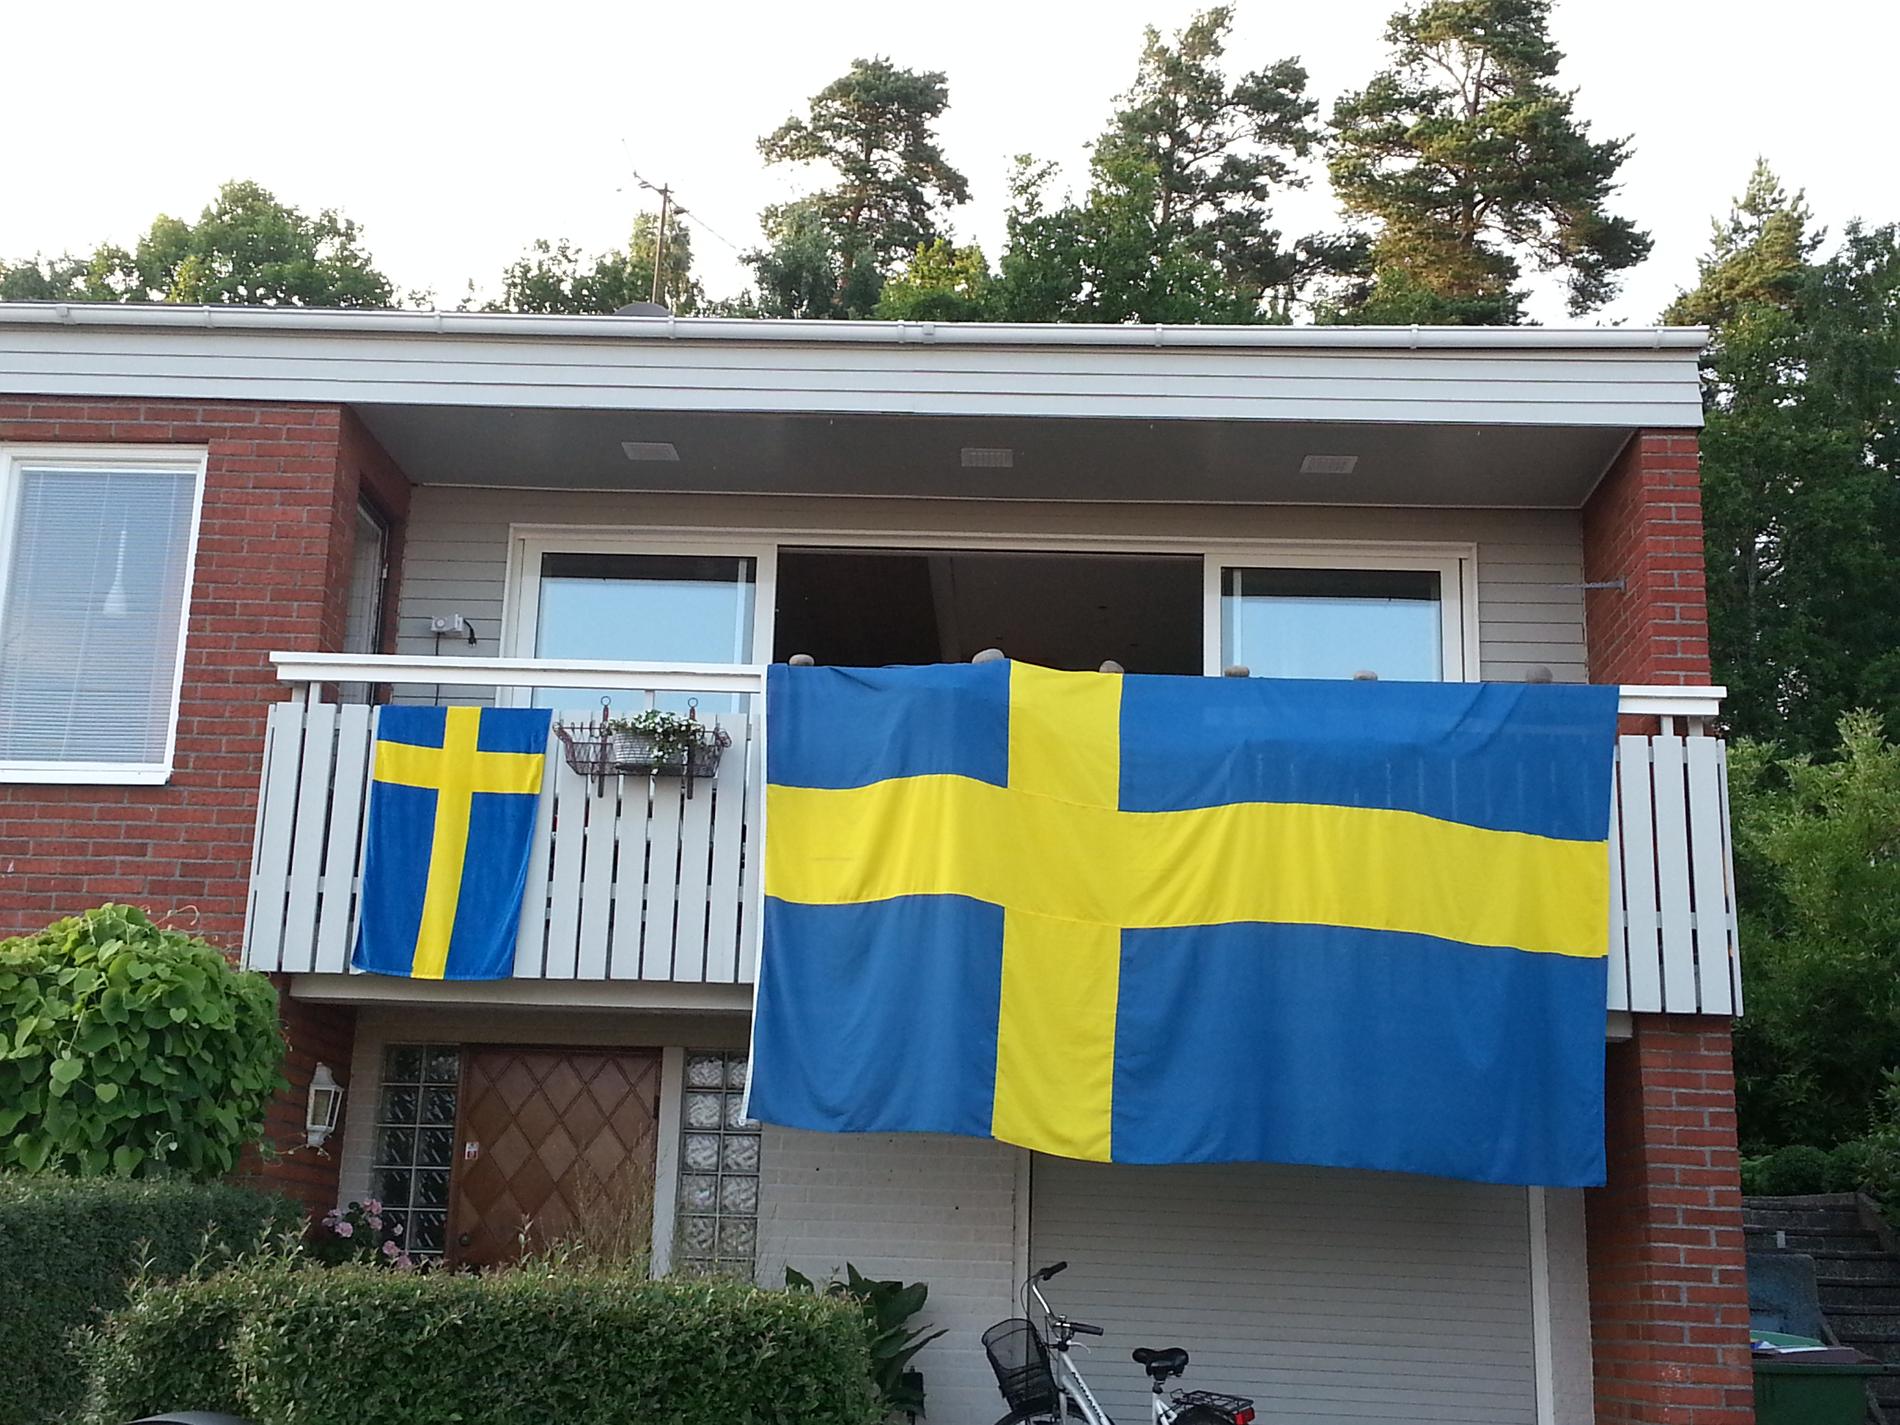 Sommarbild, heja Sverige!